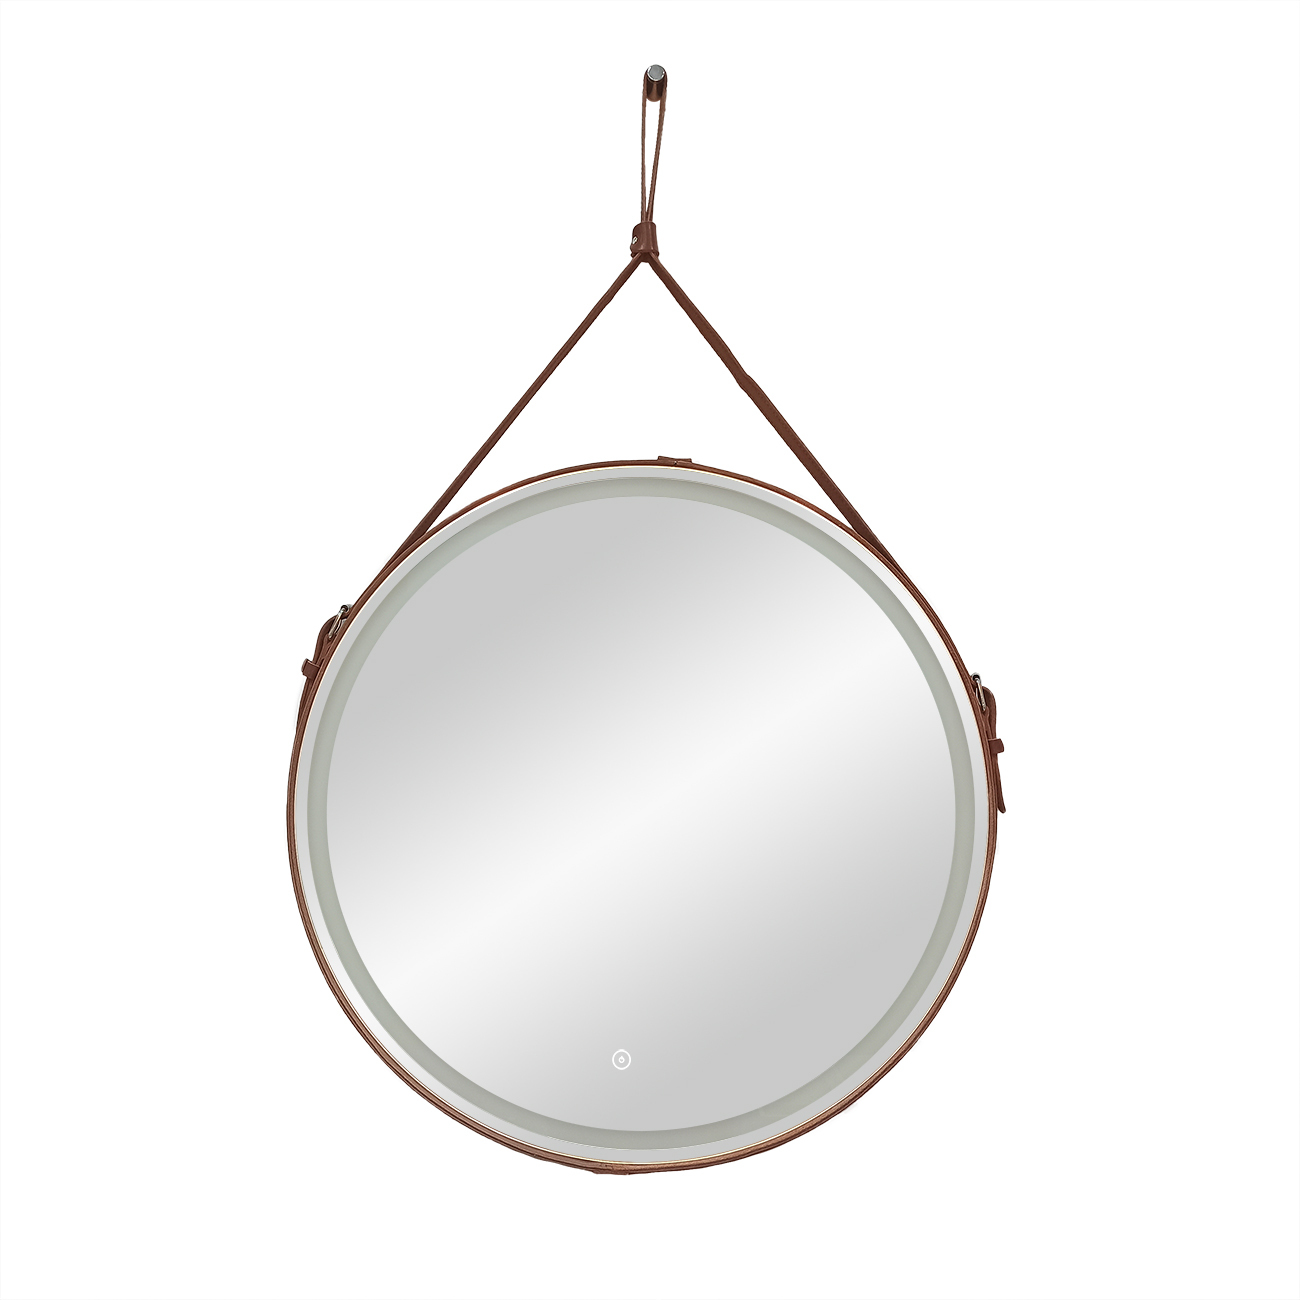 фото Зеркало для ванной uperwood round 65 см, led подсветка, сенсор, коричневый ремень